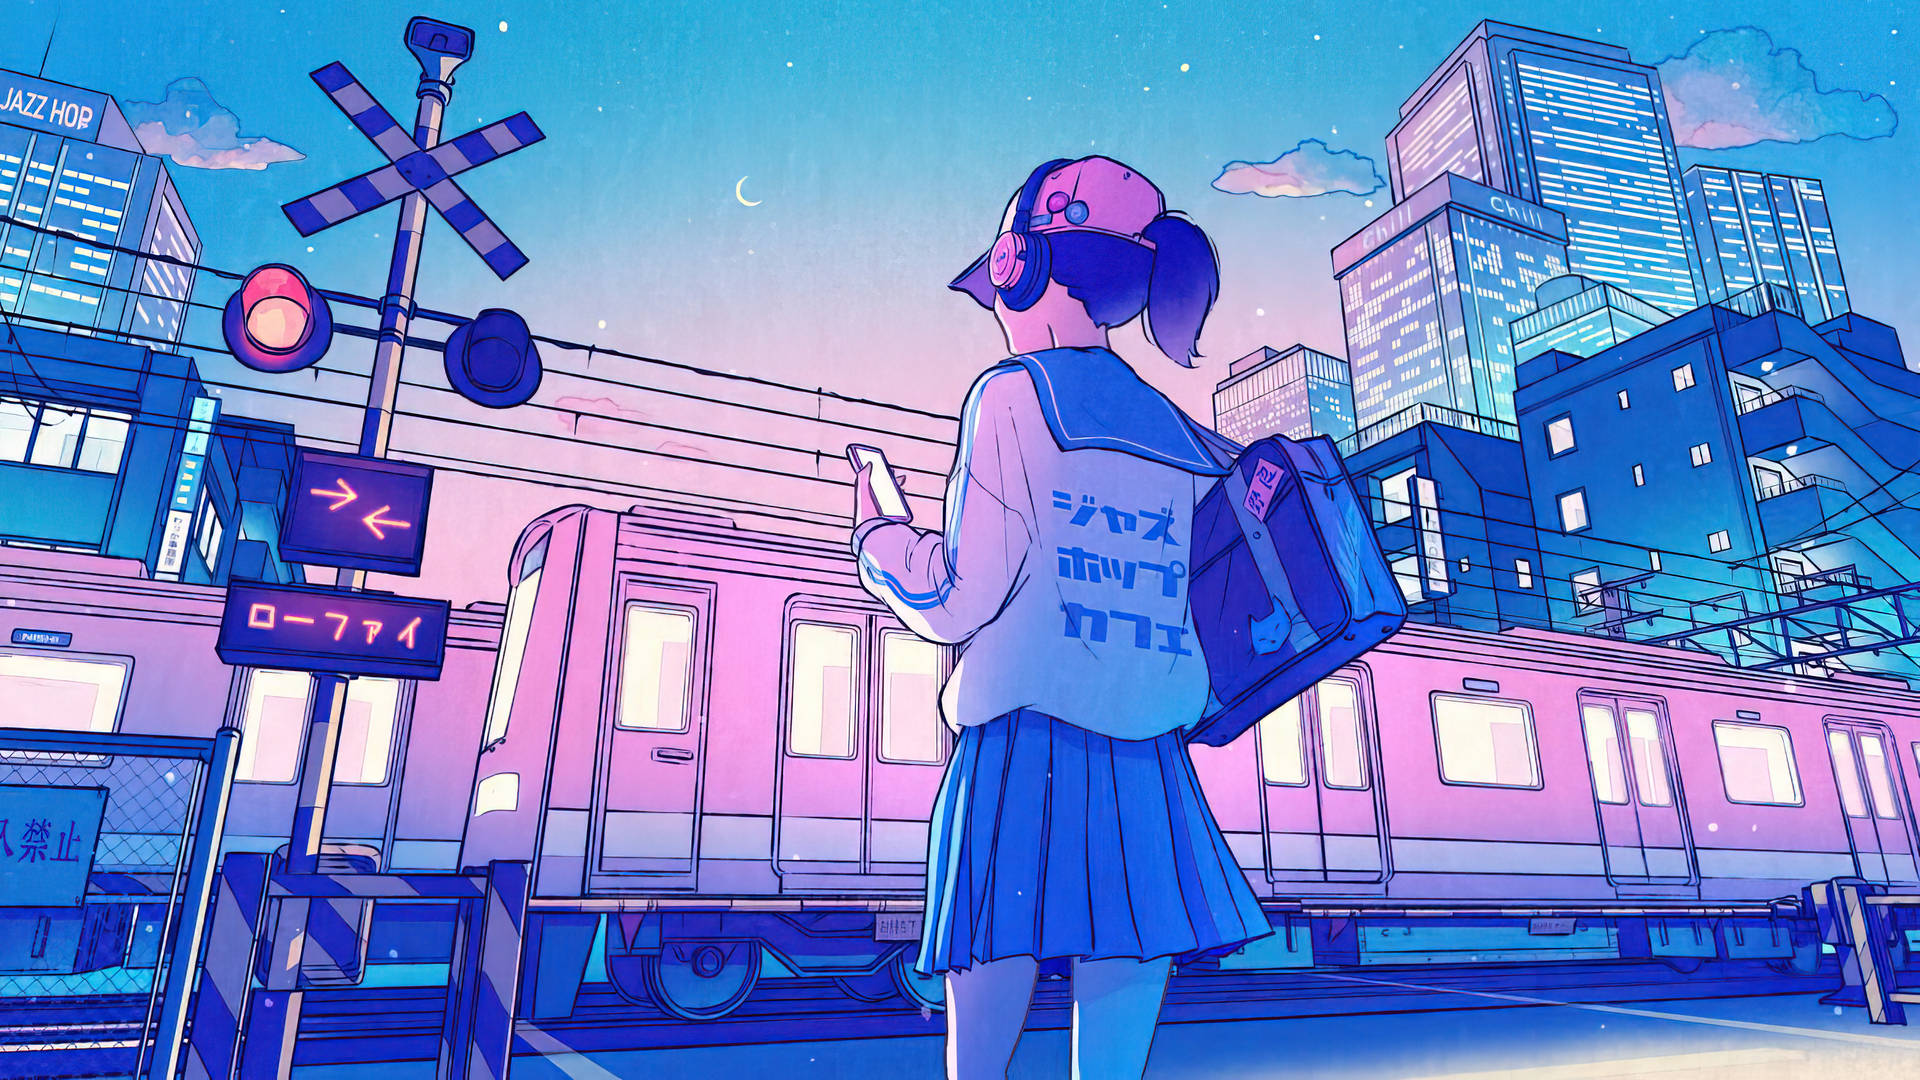 Japanese Anime Girl Student Train Station